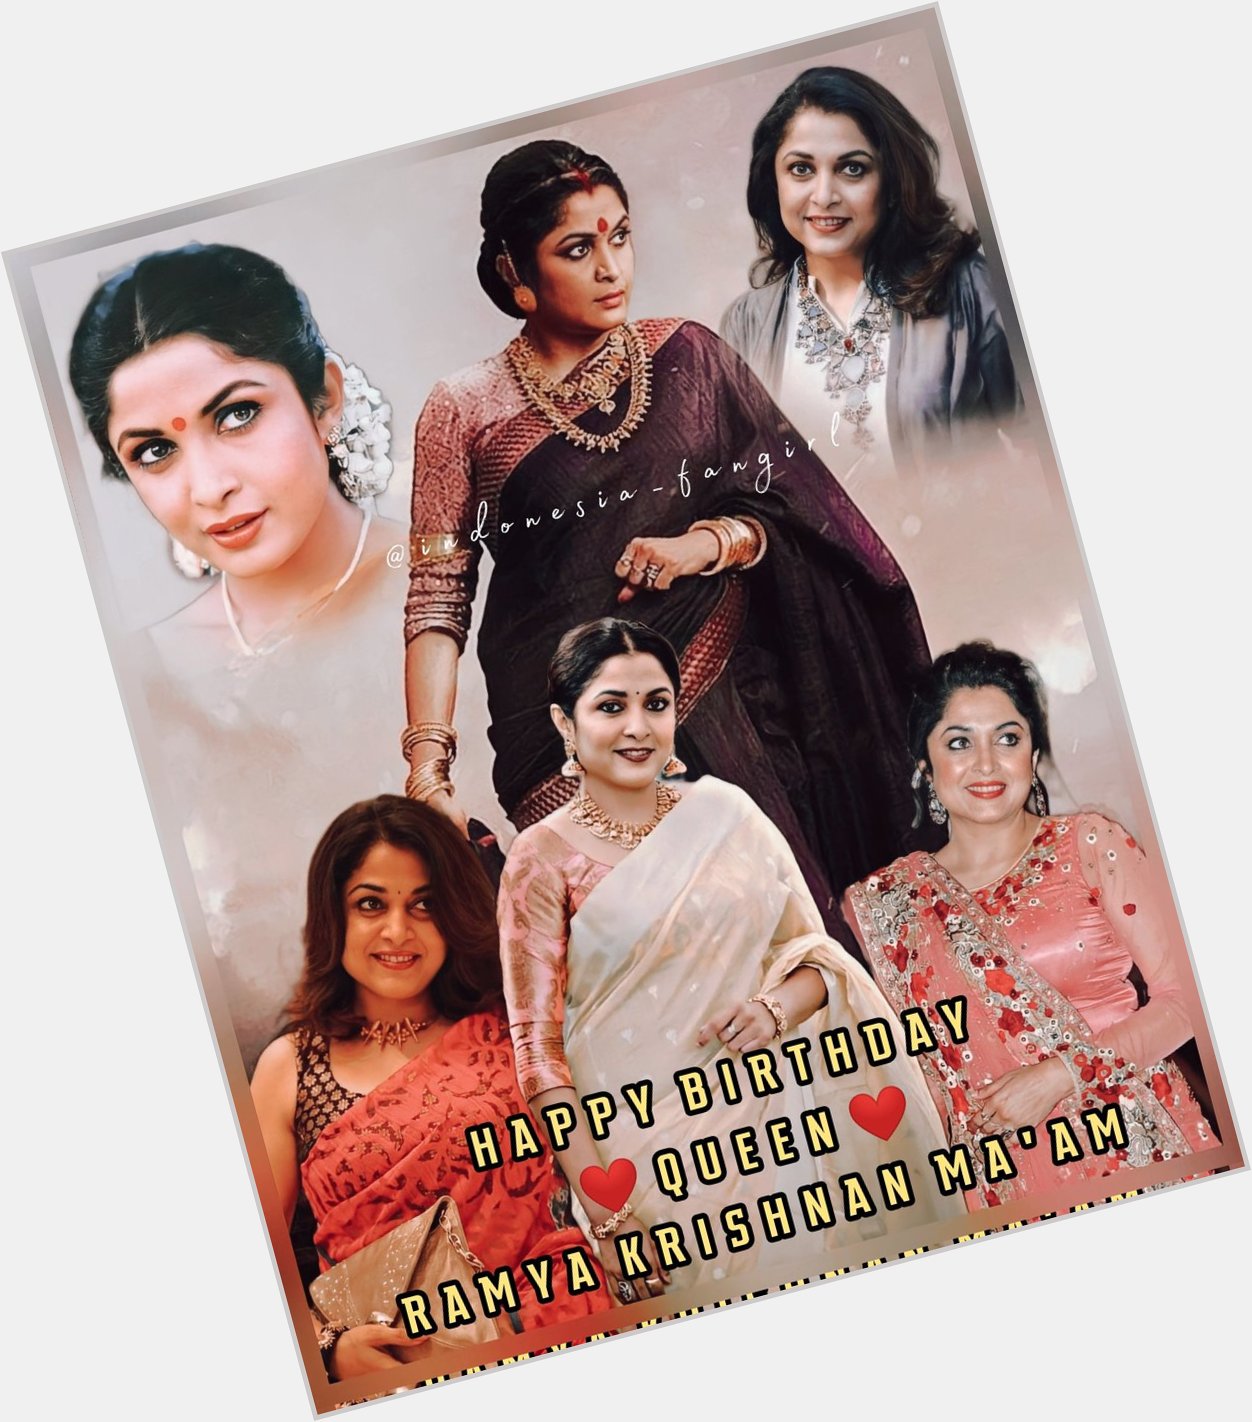 Happy Birthday Queen   Ramya Krishnan Ma\am      Ma\am 